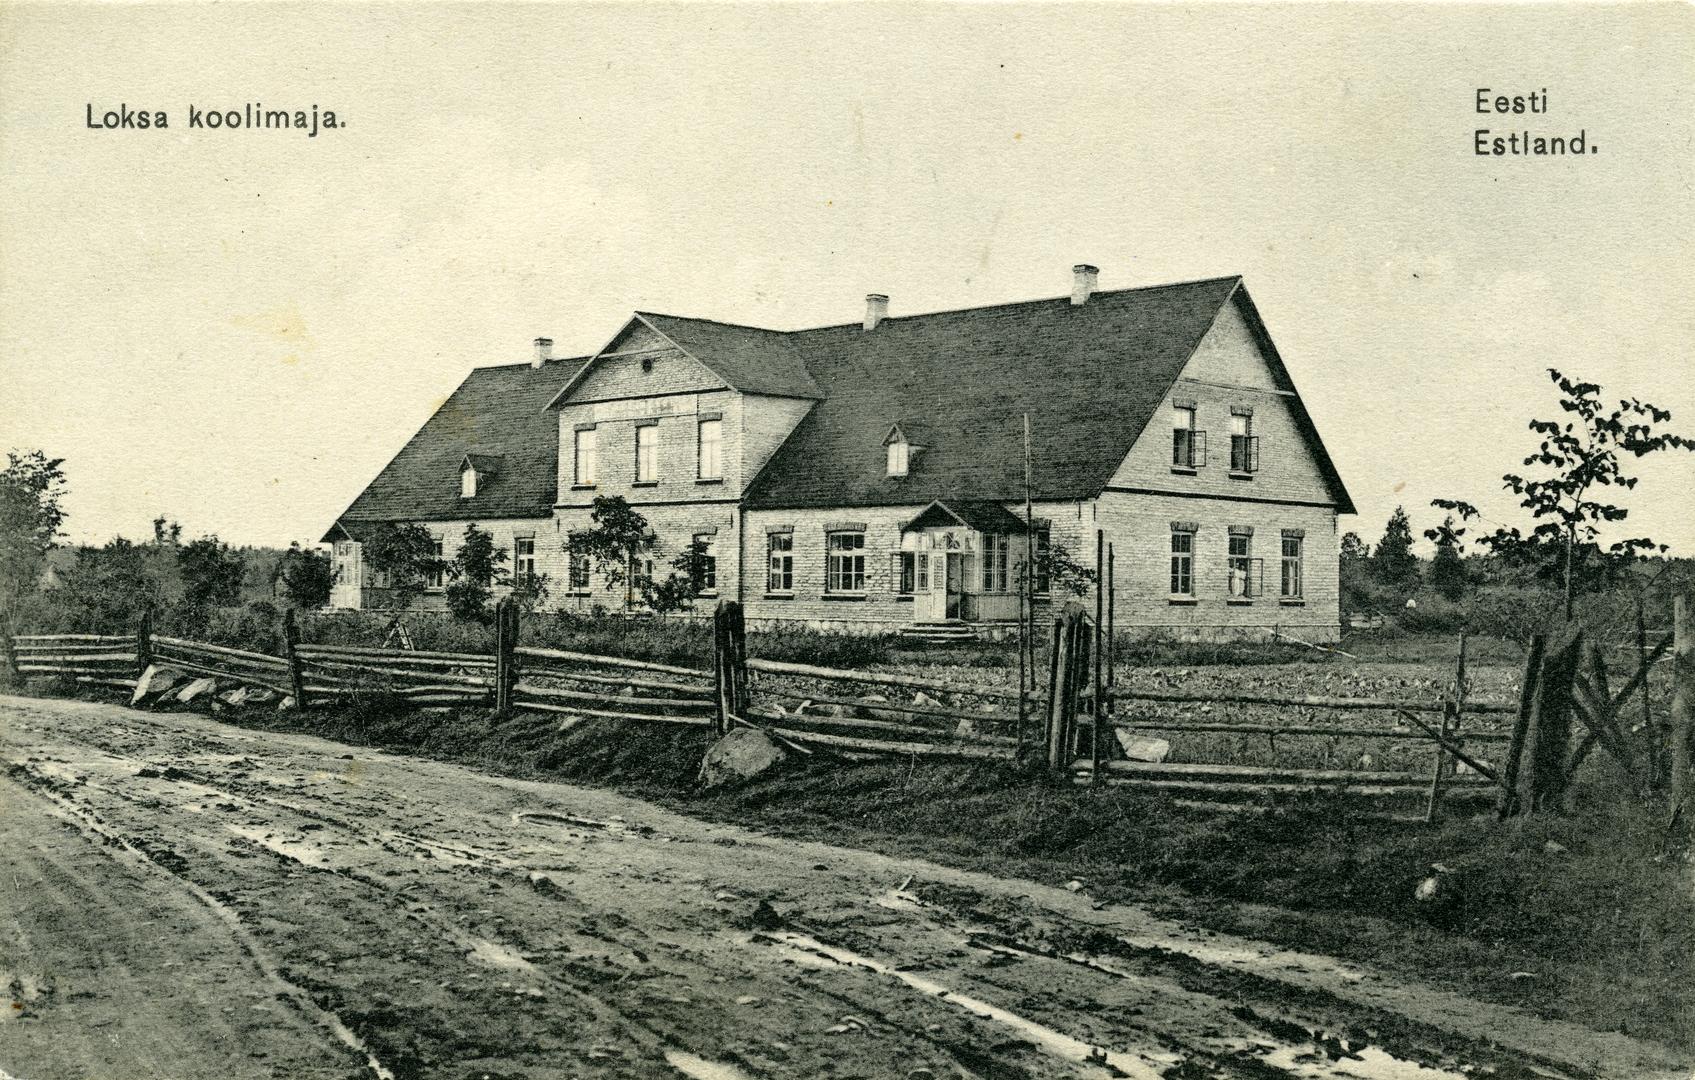 Loksa schoolhouse